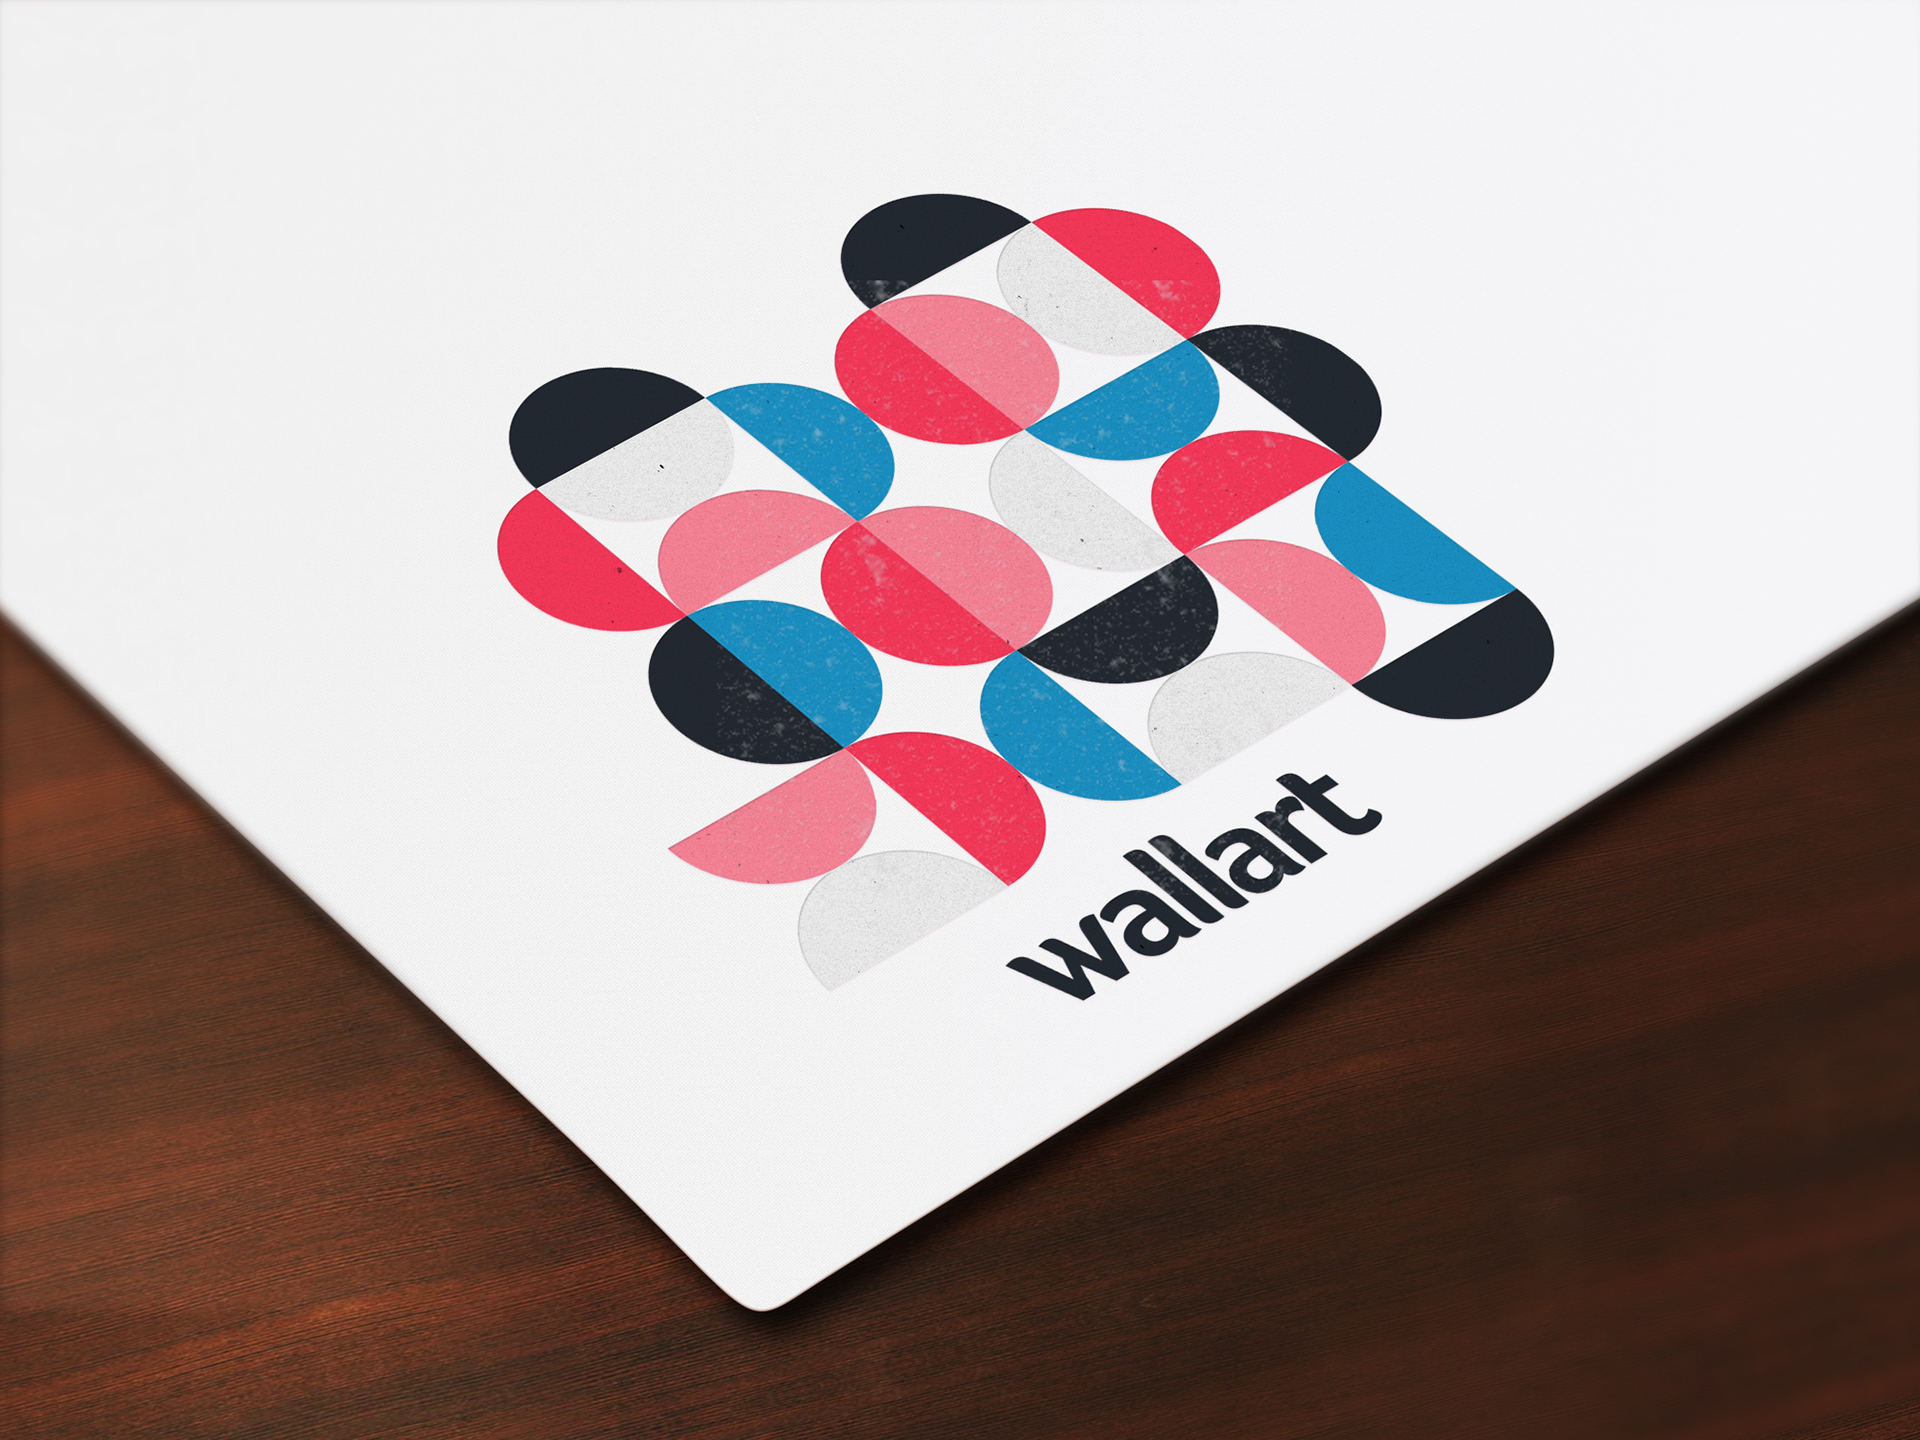 WallArt Moldova corporate identity